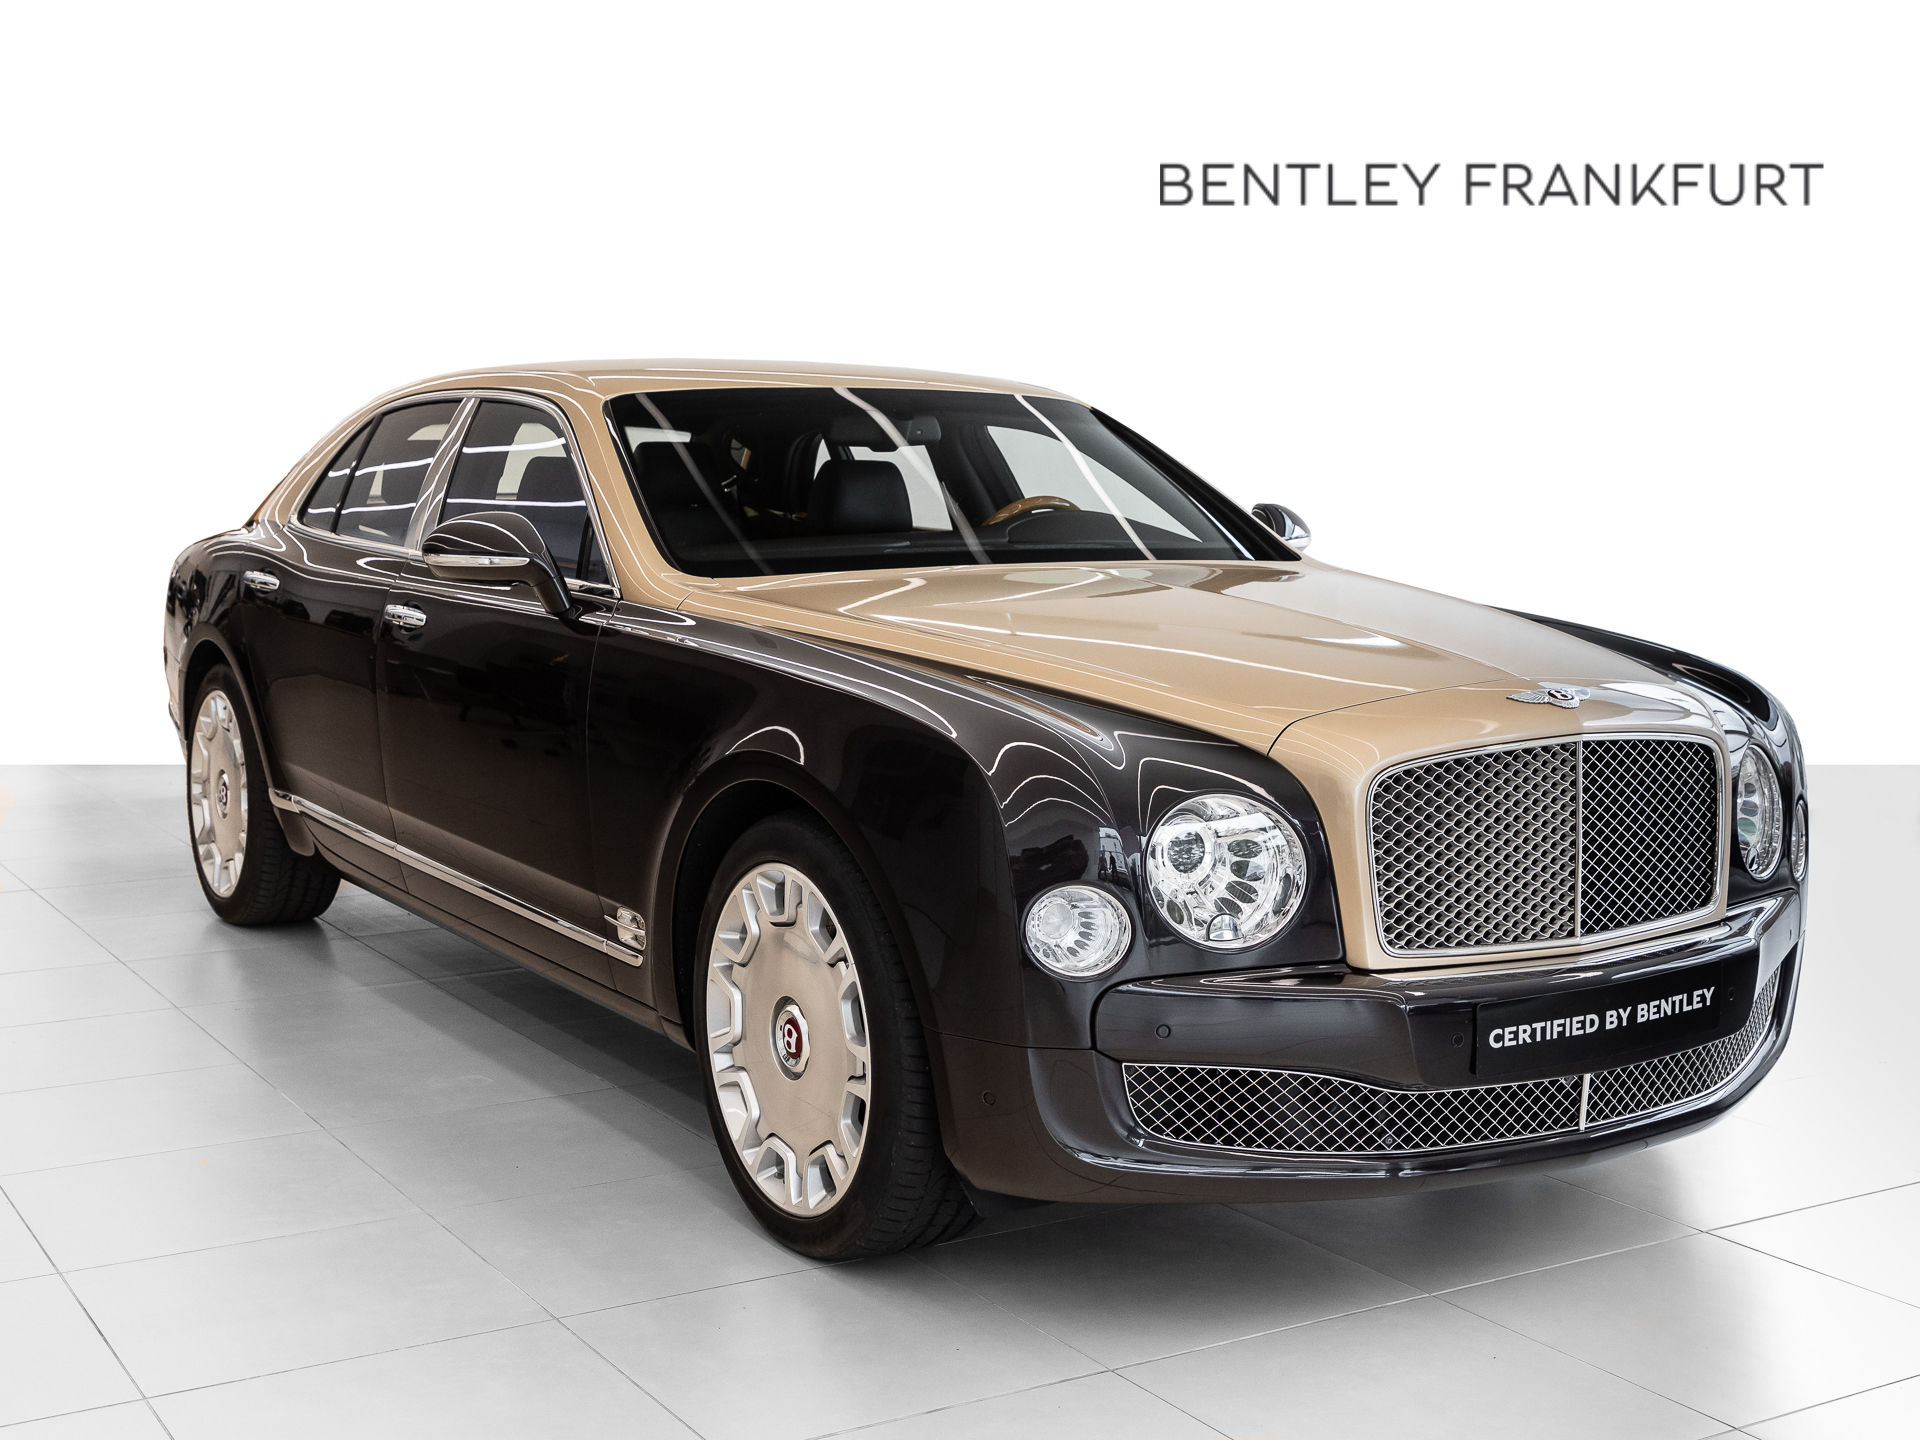 Bentley Mulsanne von BENTLEY FRANKFURT